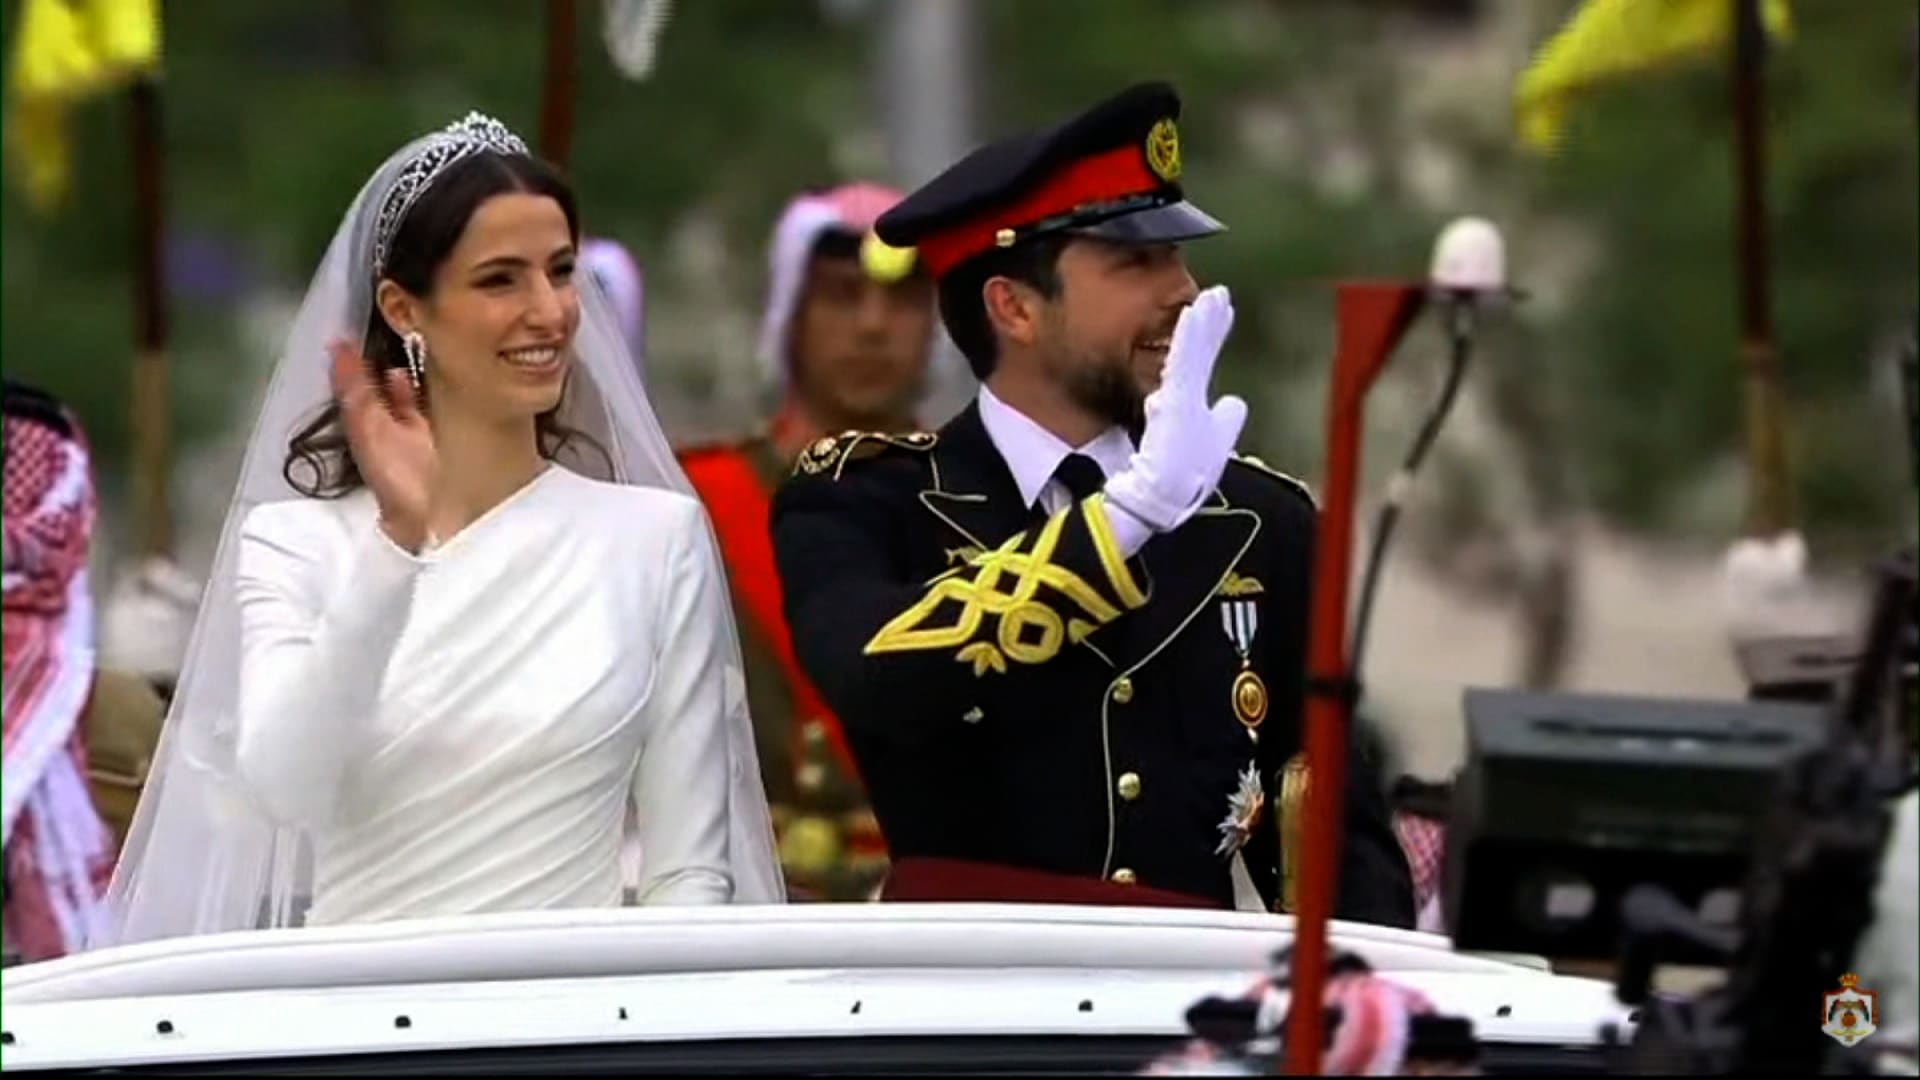 شاهد-انطلاق-الأمير-الحسين-والأميرة-رجوة-في-“الموكب-الأحمر”-من-قصر-زهران-إلى-قصر-الحسينية